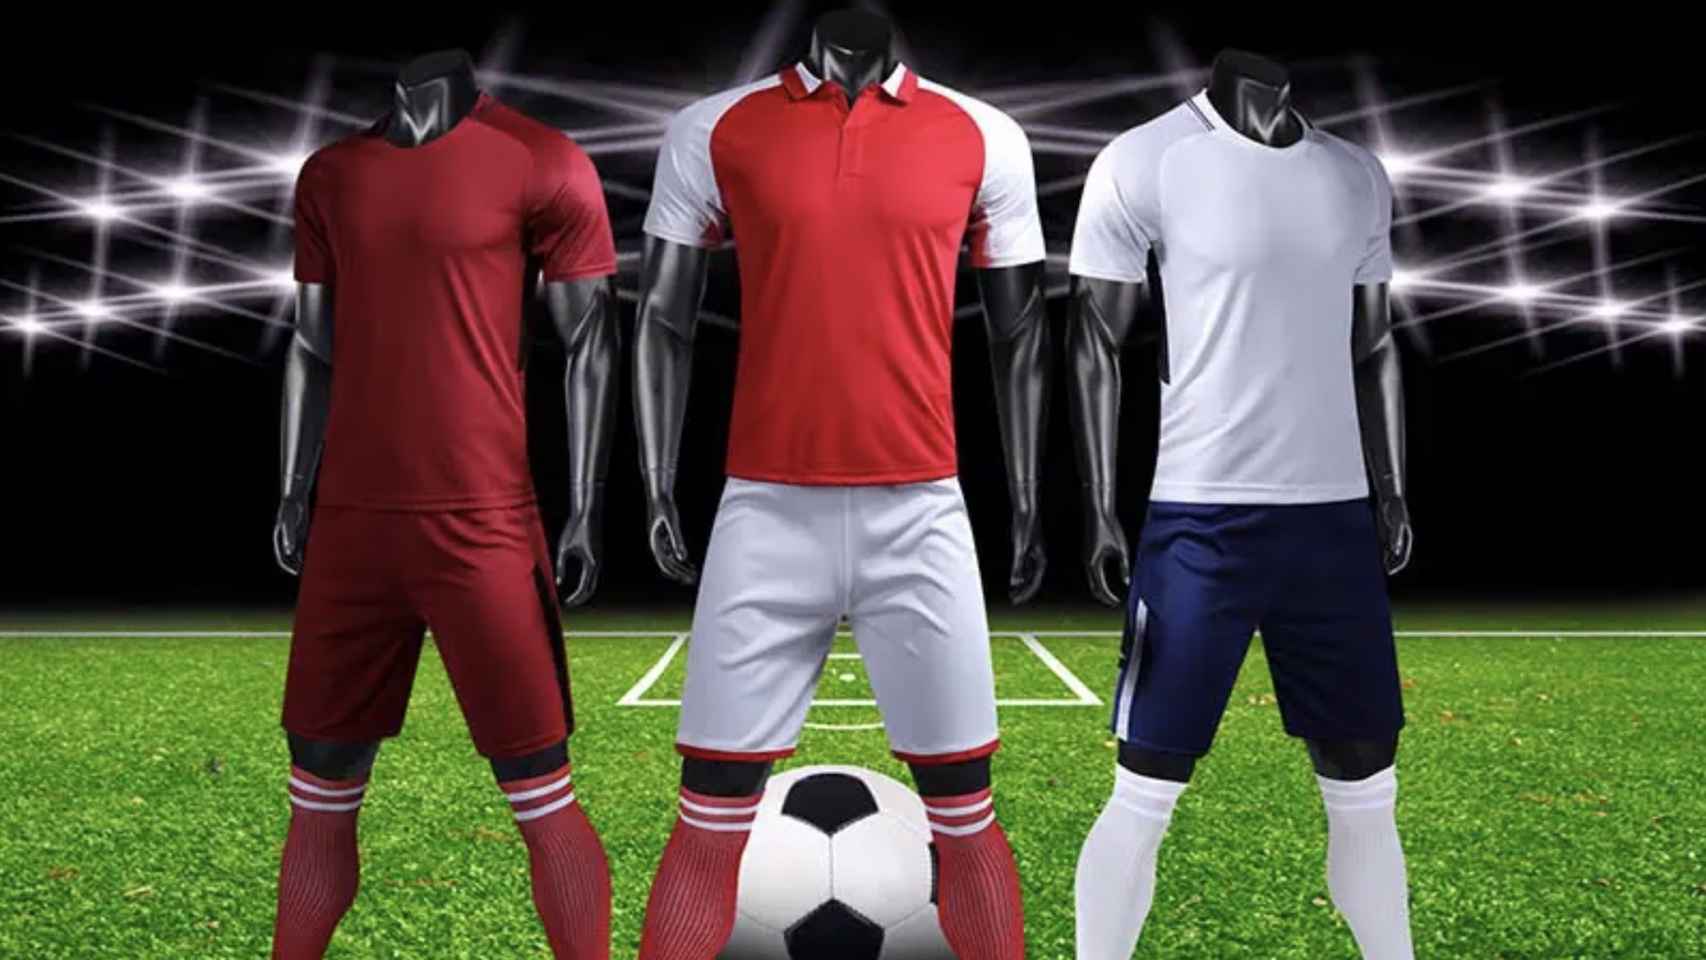 Camisetas de fútbol réplicas, la última moda para los equipos de